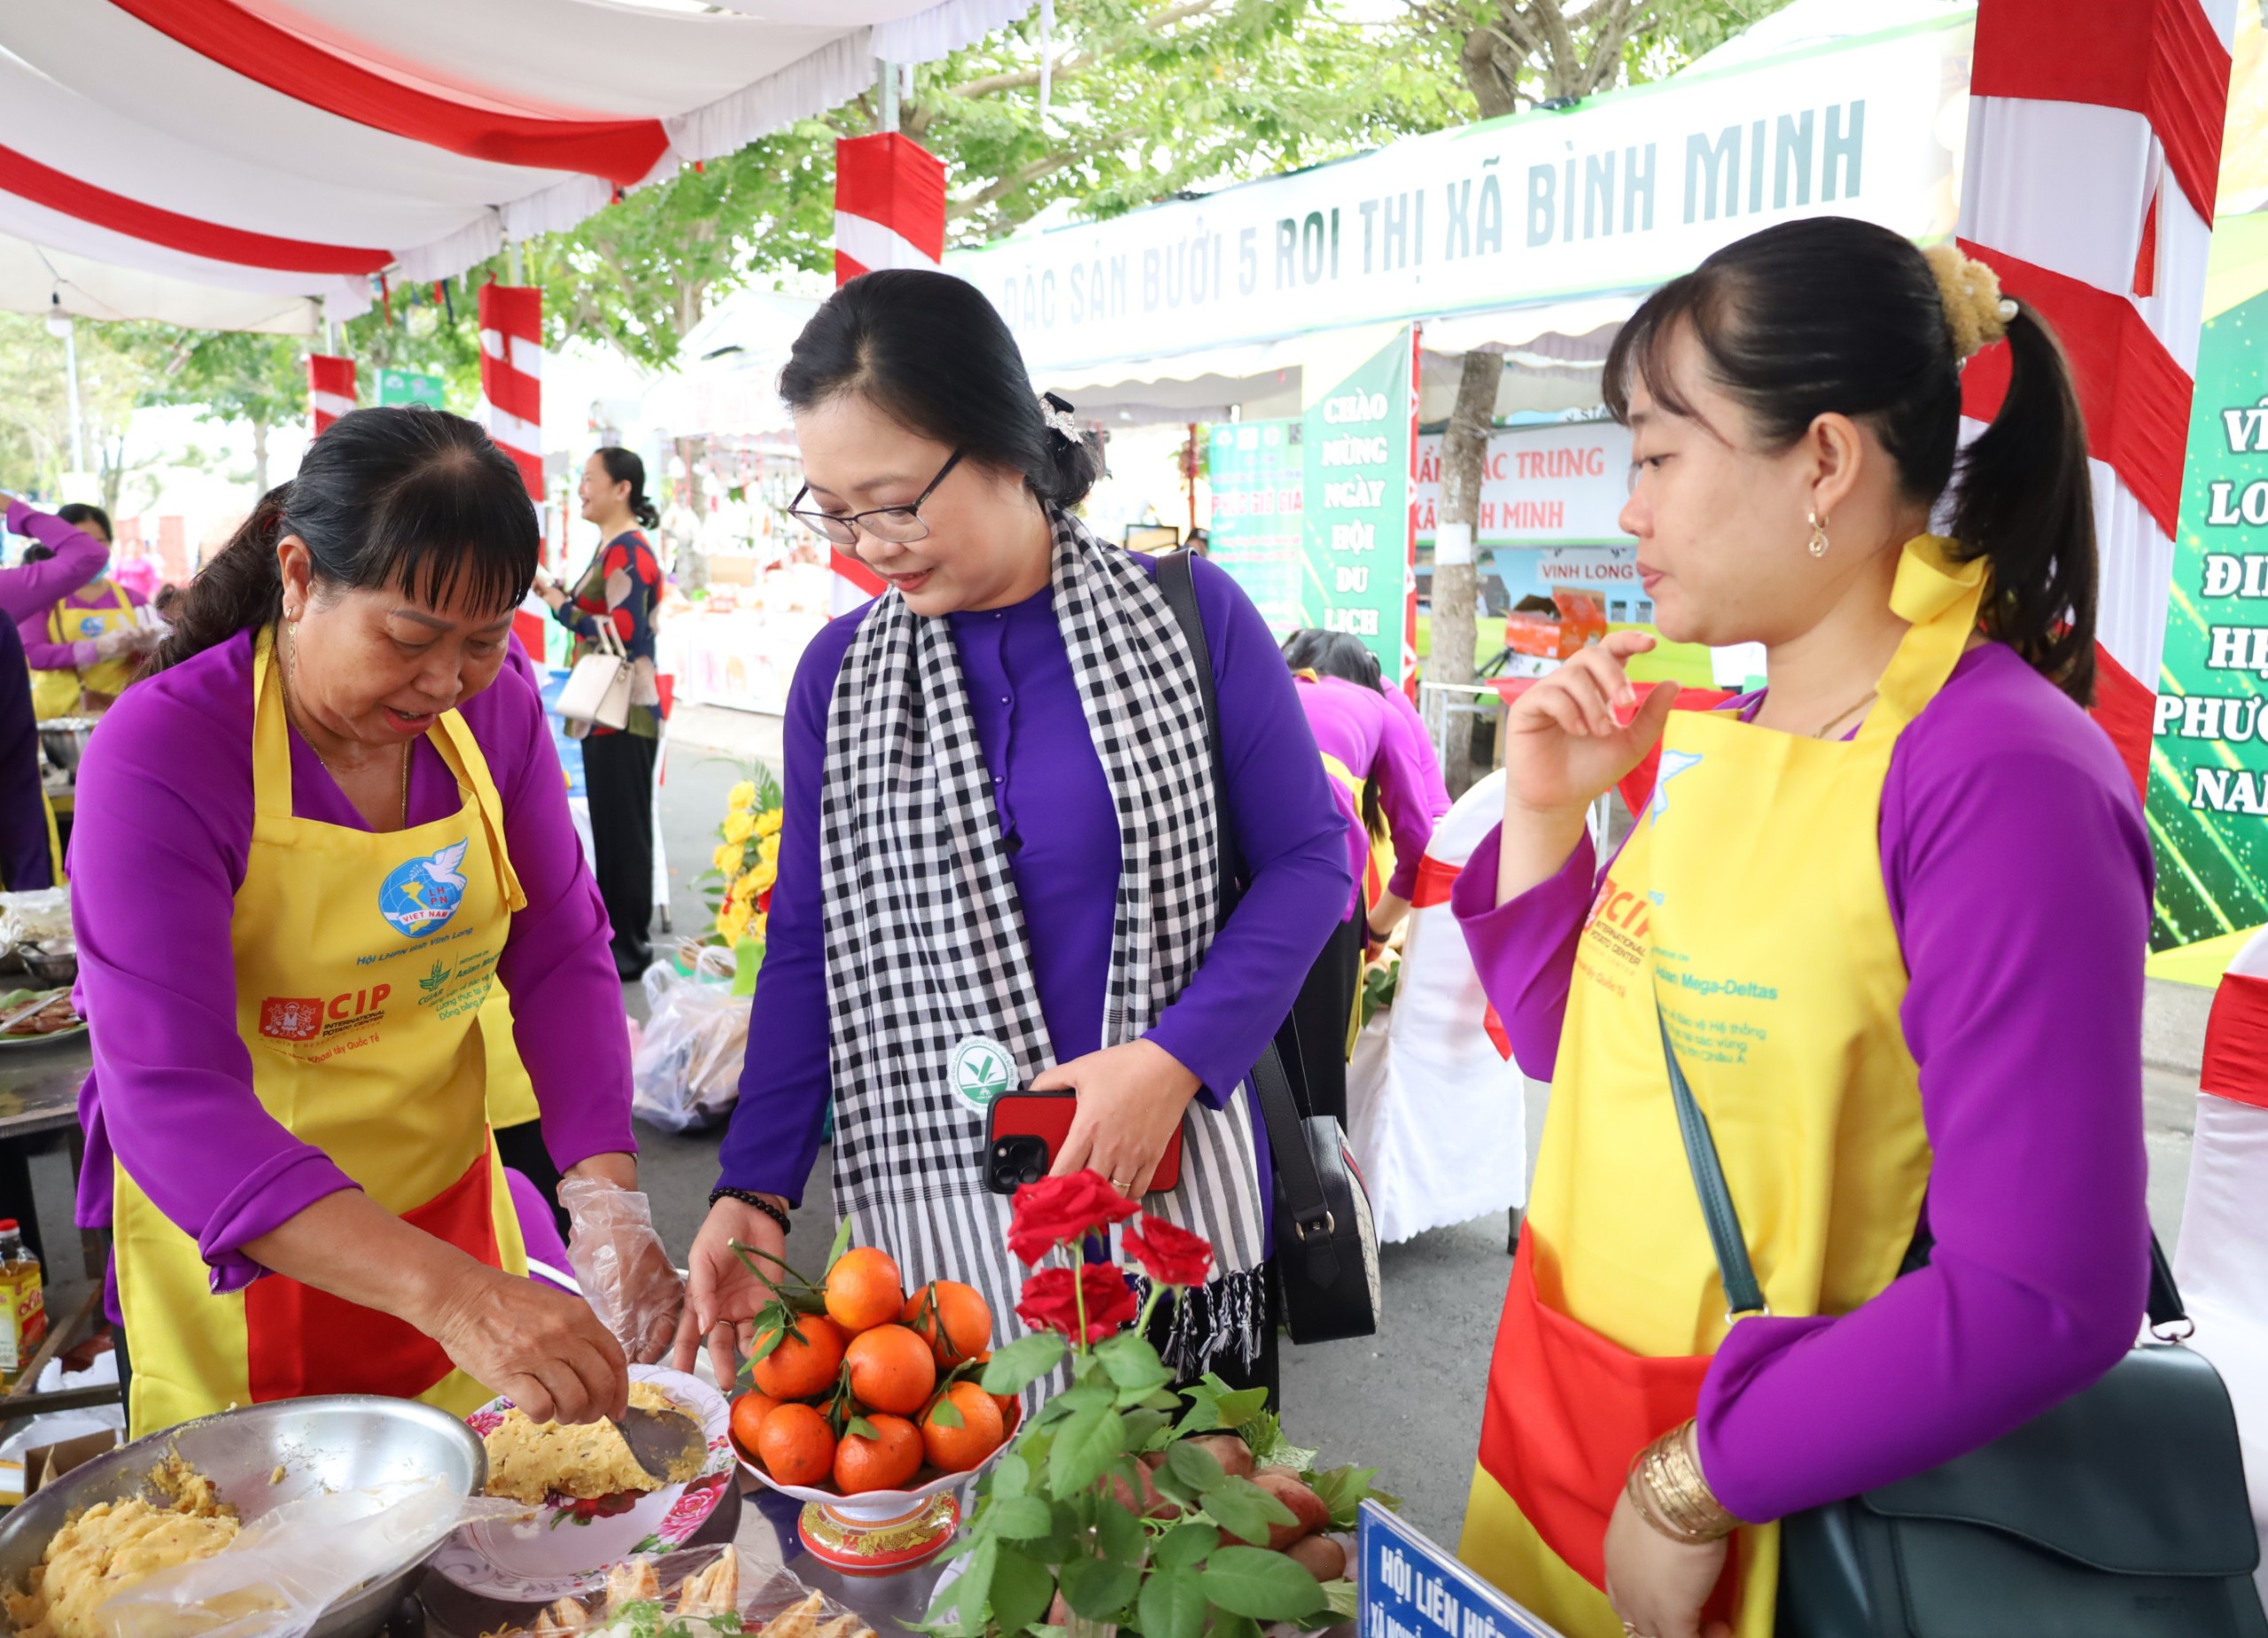 Bà Nguyễn Thị Quyên Thanh - Phó Chủ tịch UBND tỉnh Vĩnh Long tham quan các công đoạn chế biến món ăn.